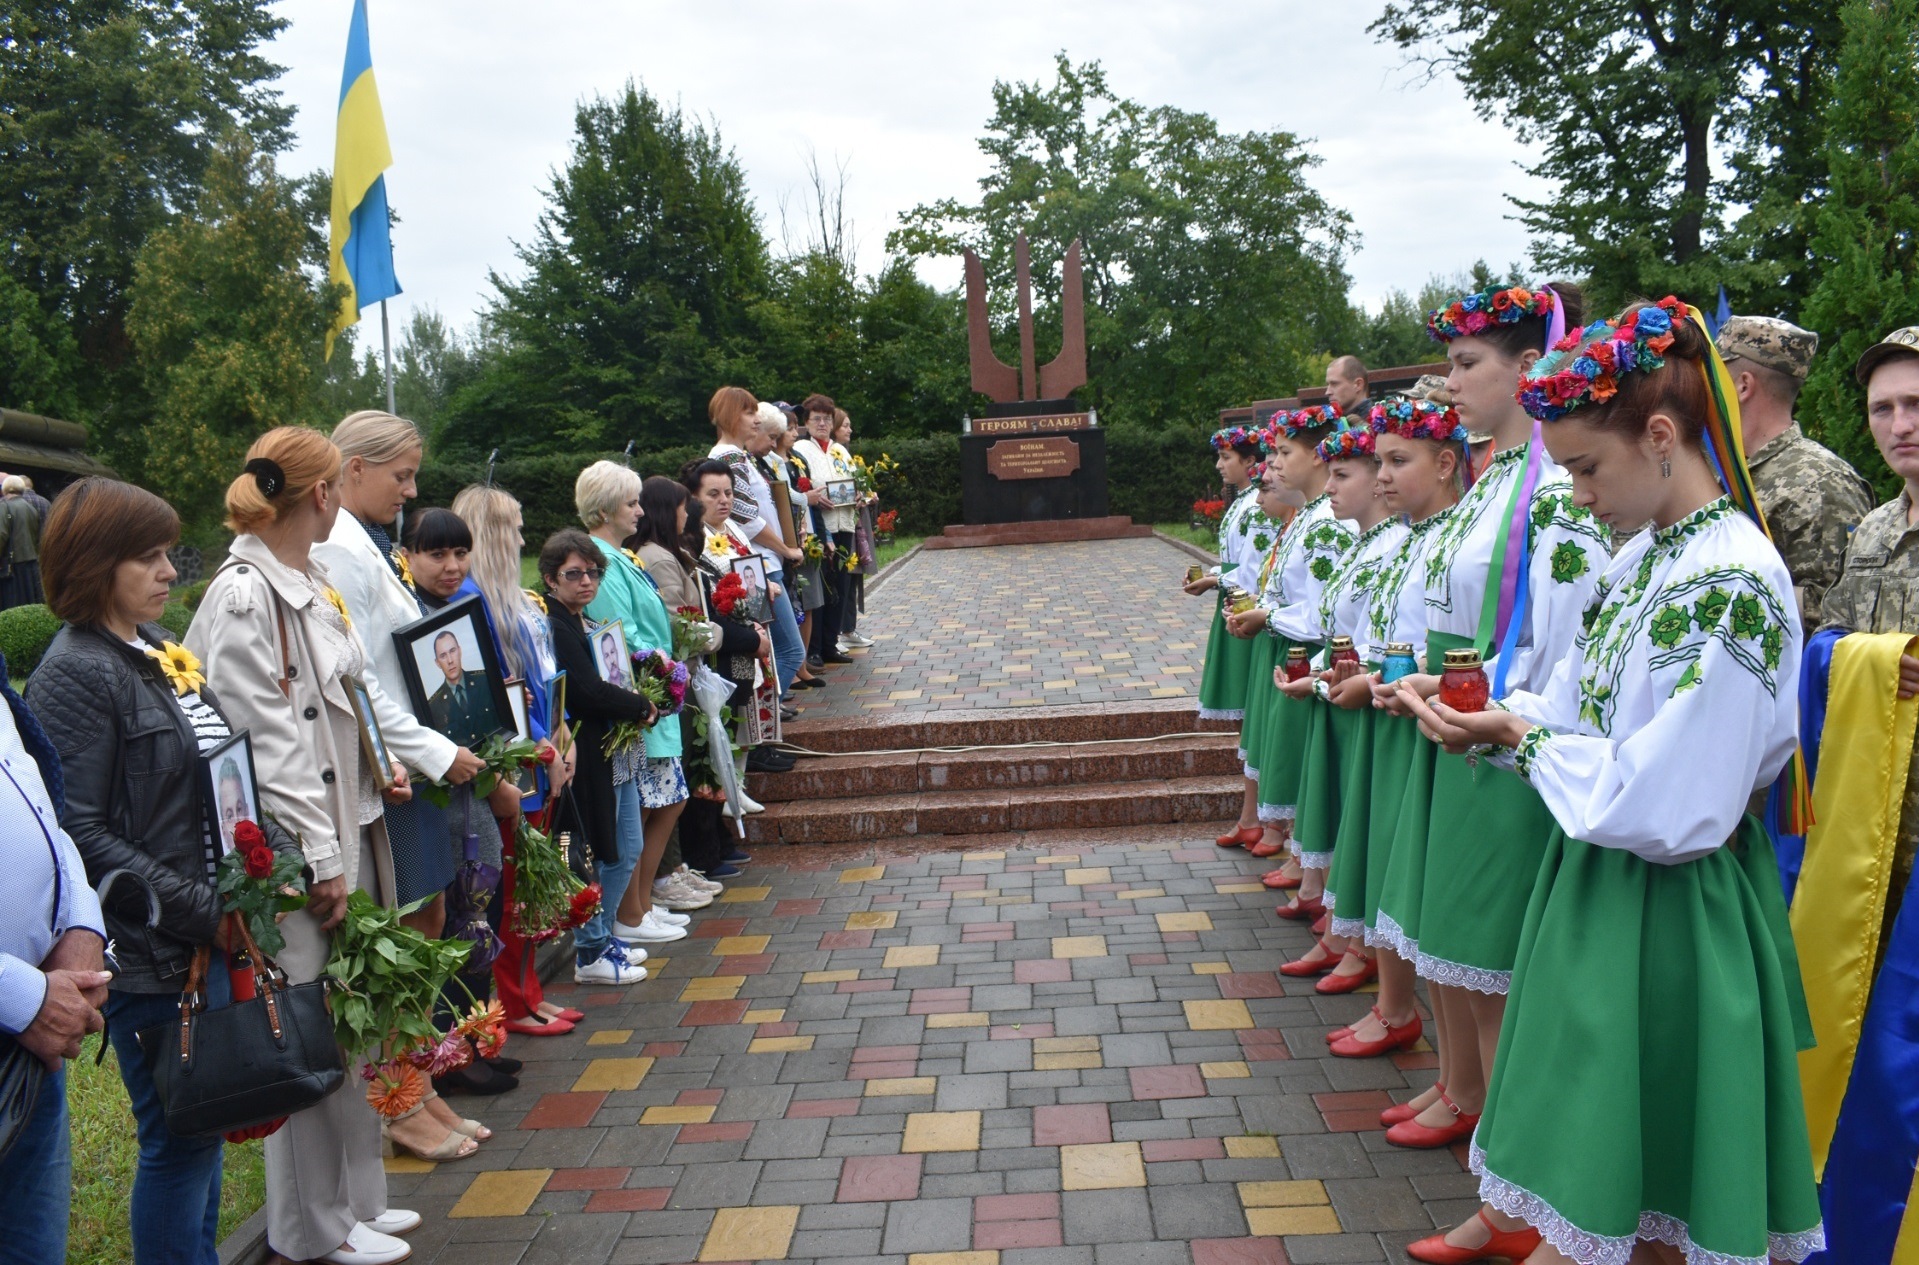 Новоград-Волинська міська територіальна громада вшанувала пам’ять захисників України, які загинули в боротьбі за незалежність, суверенітет і територіальну цілісність країни